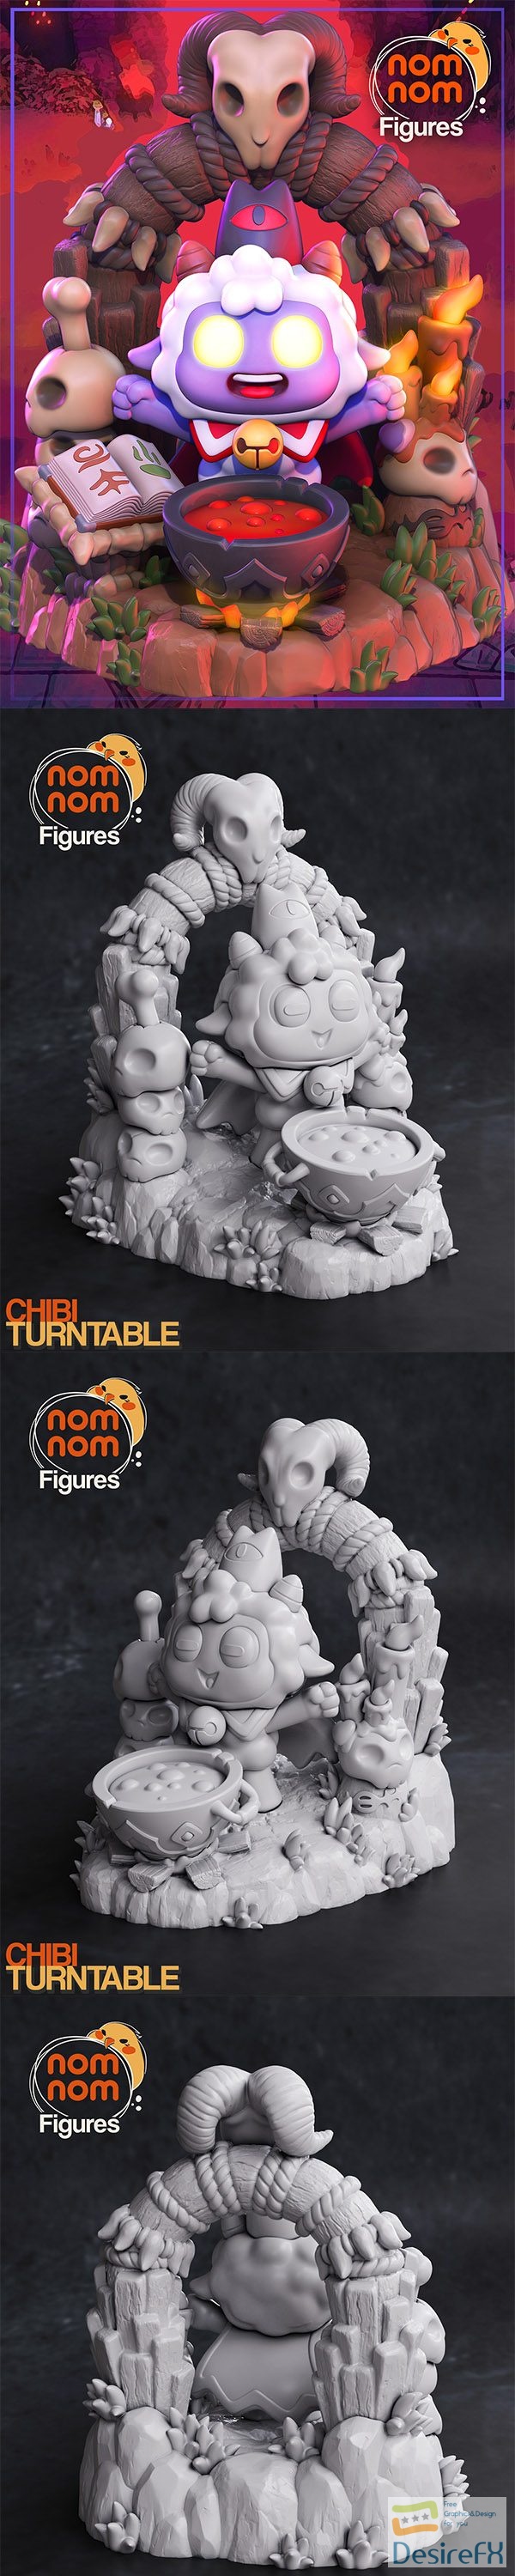 Nomnom Figures – Chibi Lamb – Cult of the Lamb – 3D Print